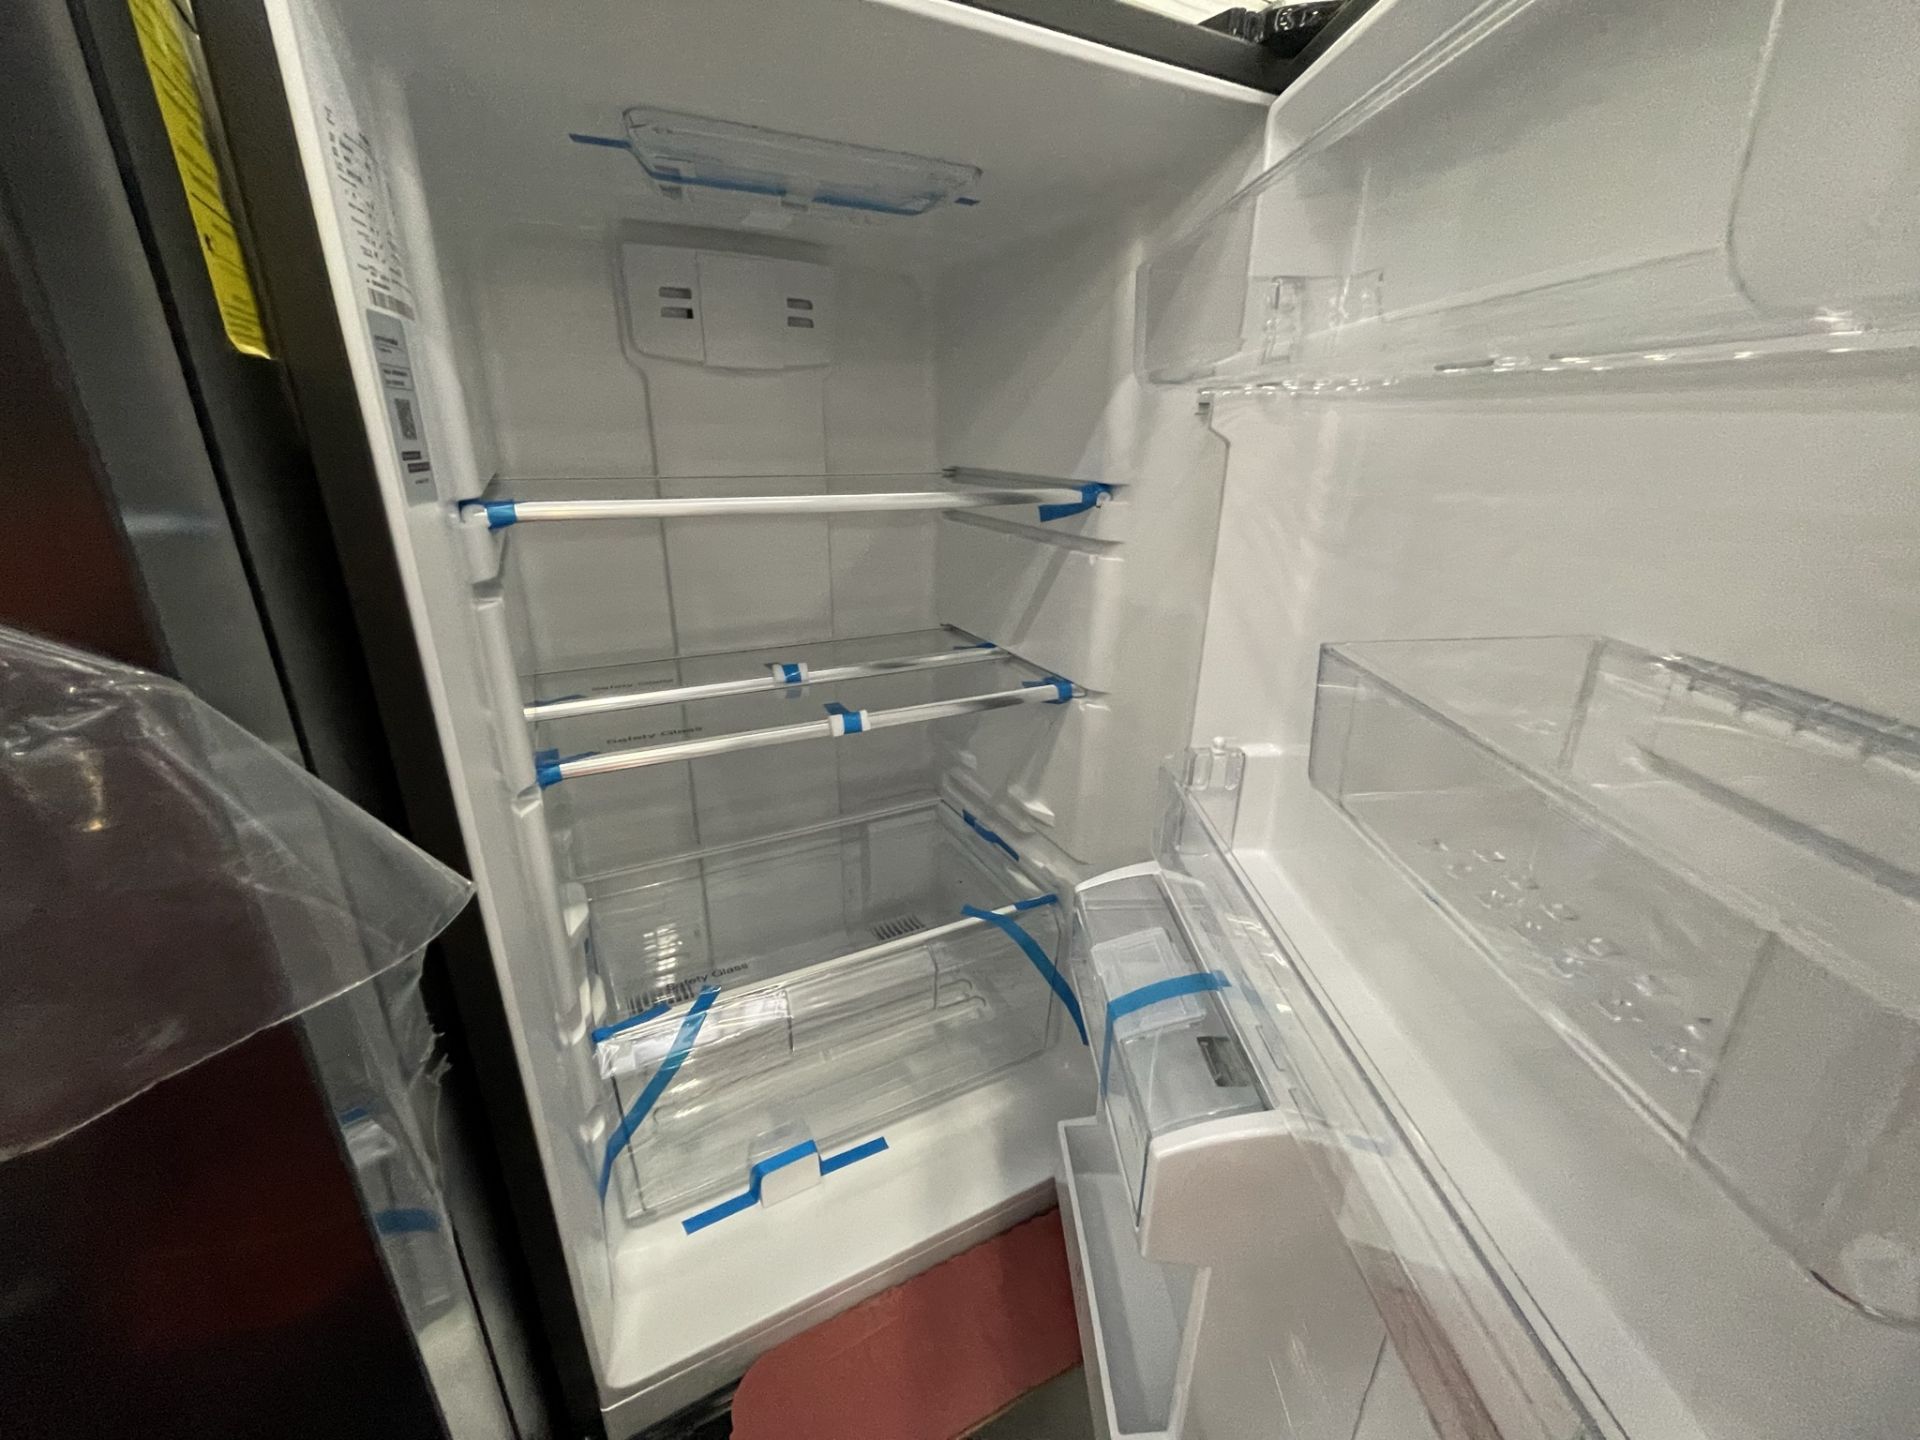 Lote de 2 Refrigeradores contiene: 1 Refrigerador con dispensador de agua Marca MABE, Modelo RMB400 - Image 15 of 24